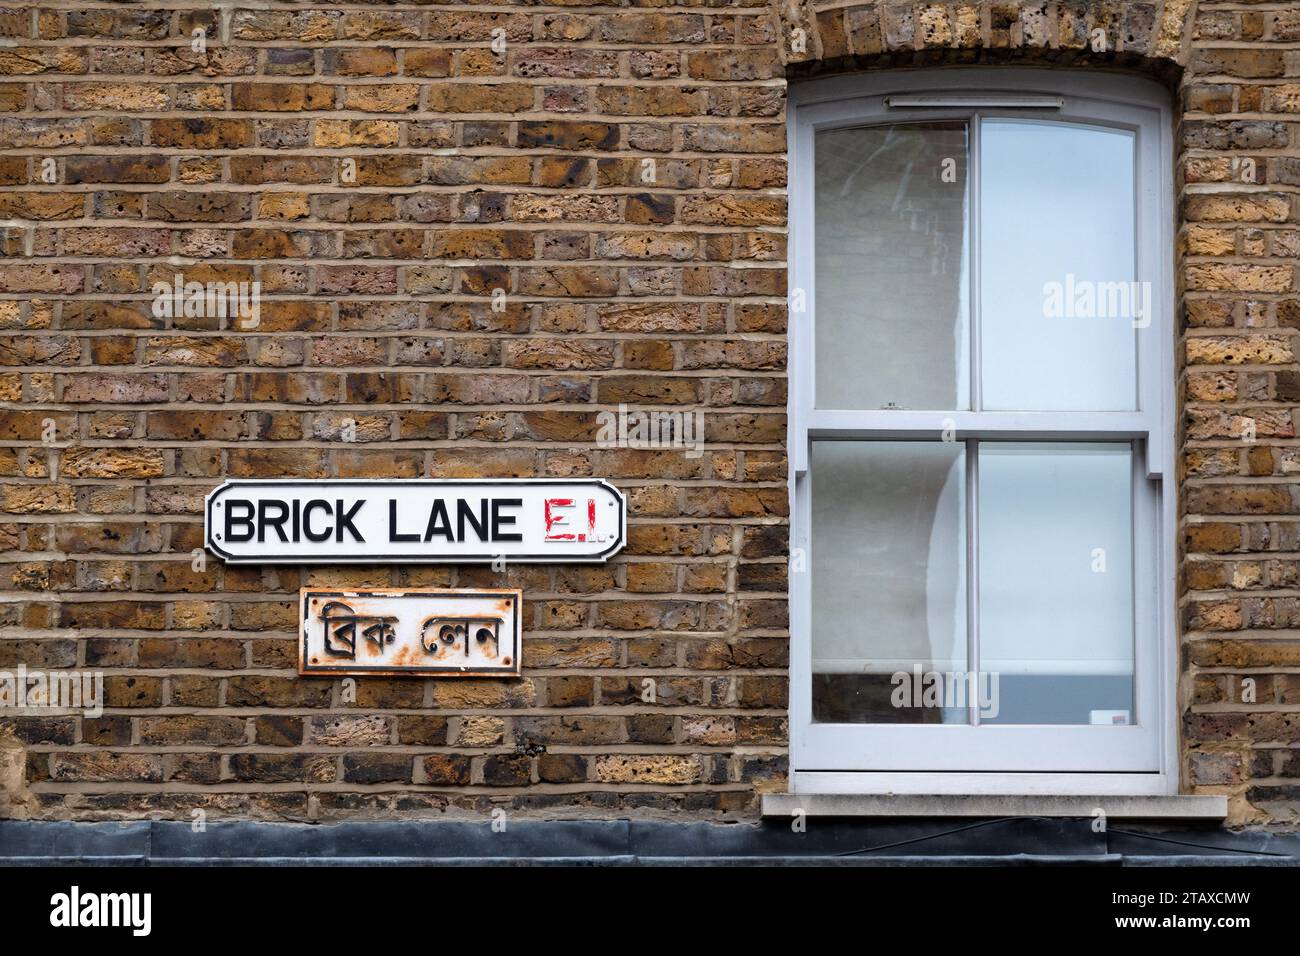 Une plaque signalétique pour Brick Lane, E1, Londres. Sous le panneau se trouve une autre plaque signalétique avec le nom de la route traduit en bengali Banque D'Images